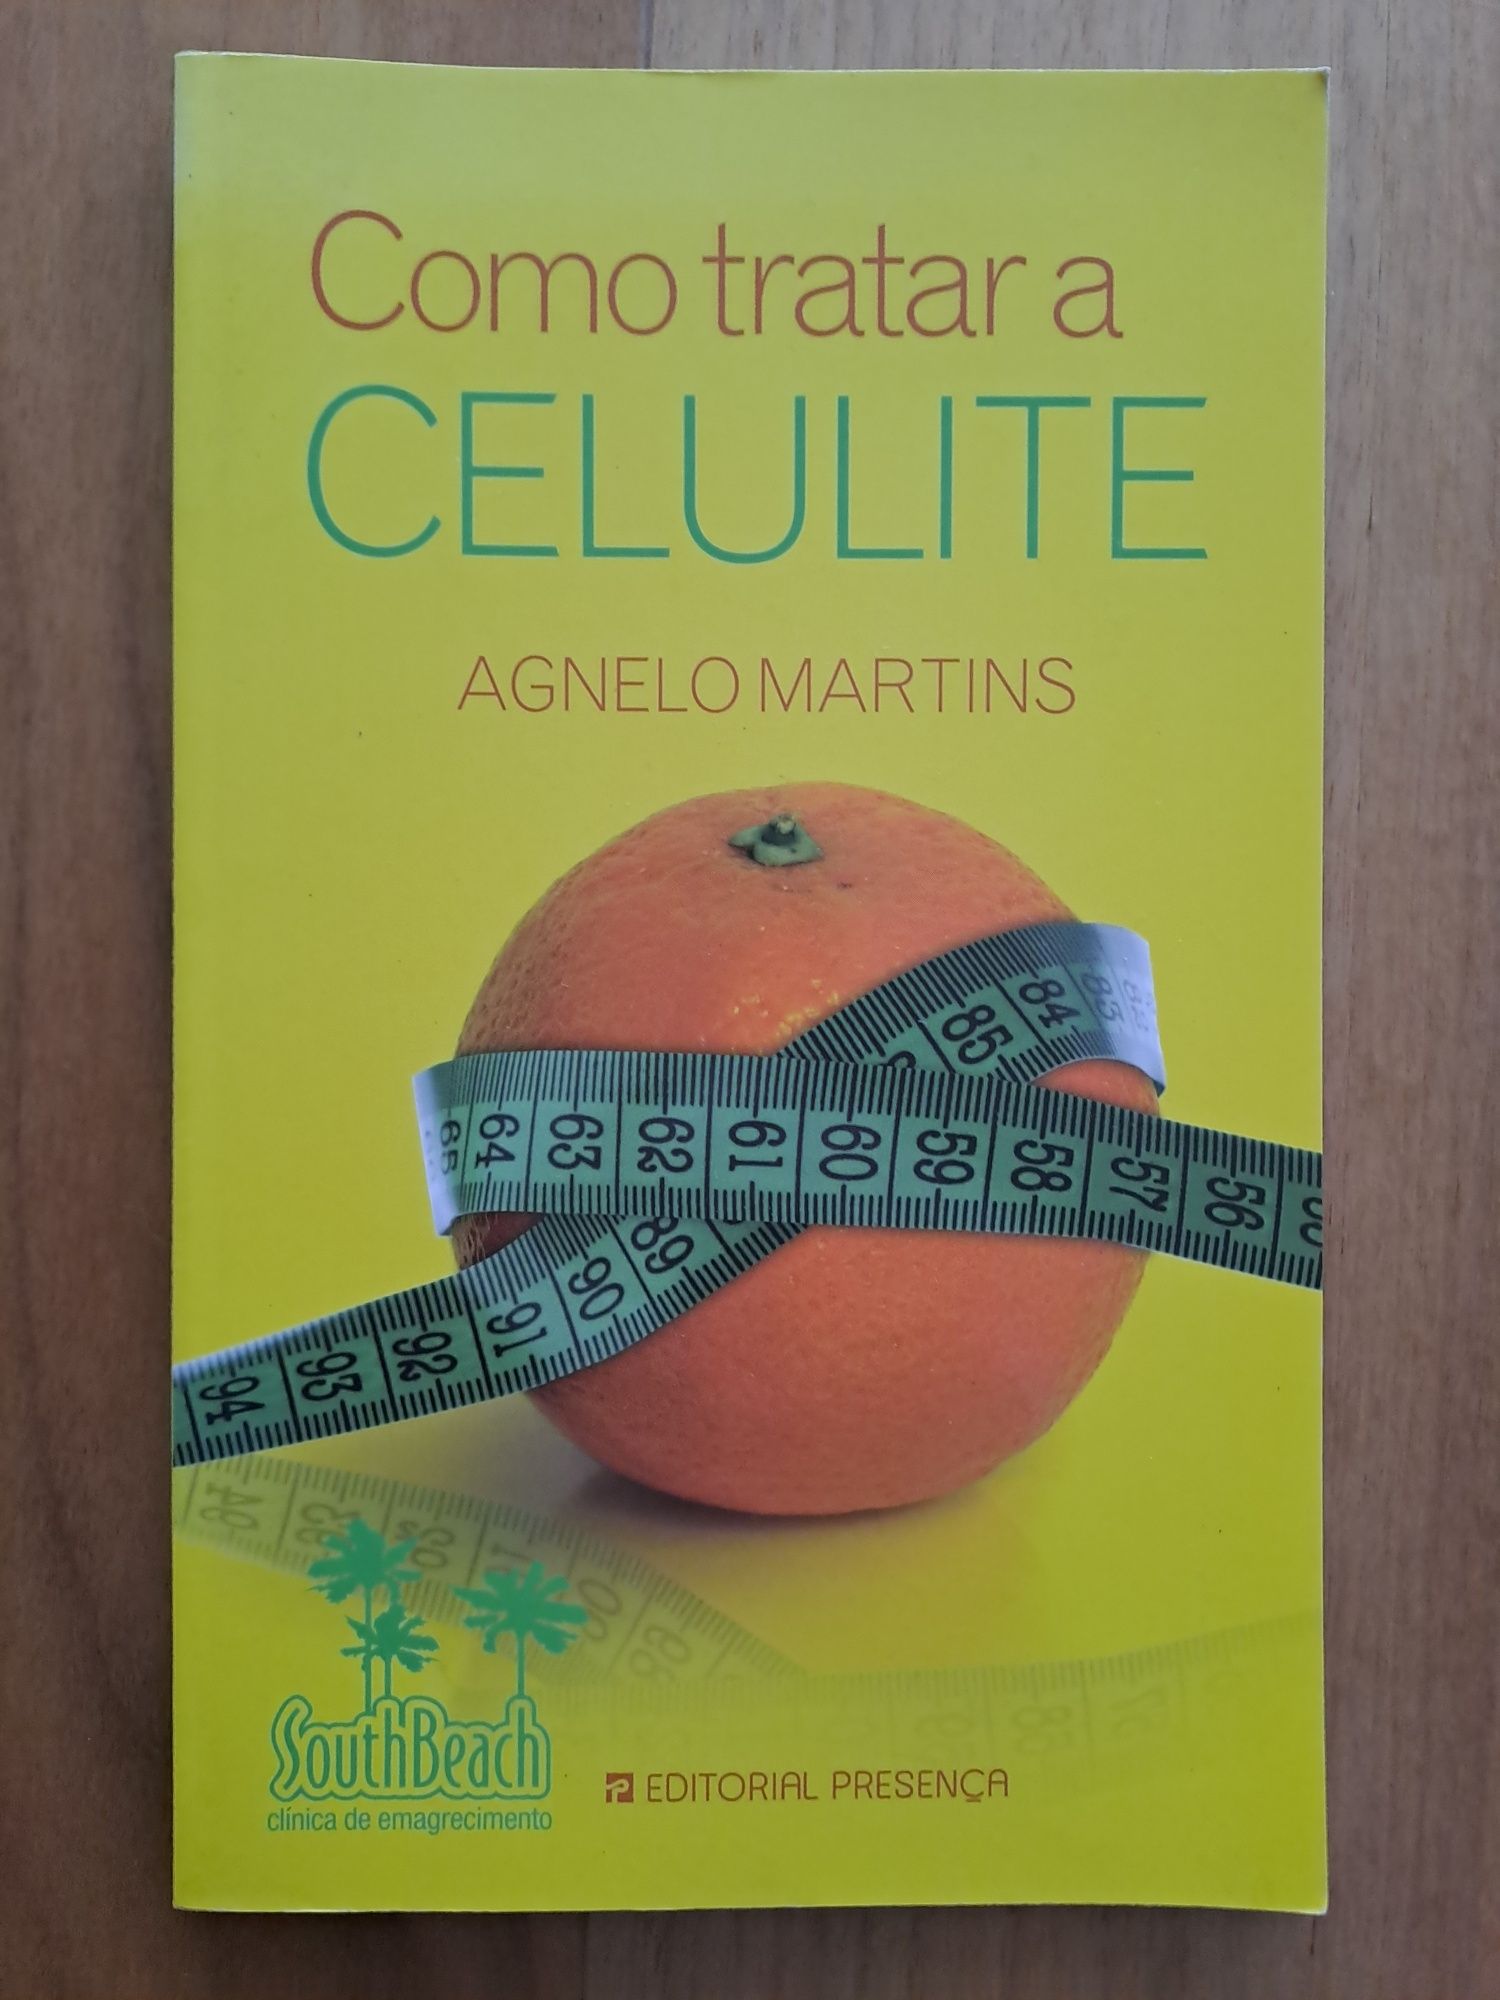 Livro novo " Como tratar a celulite"